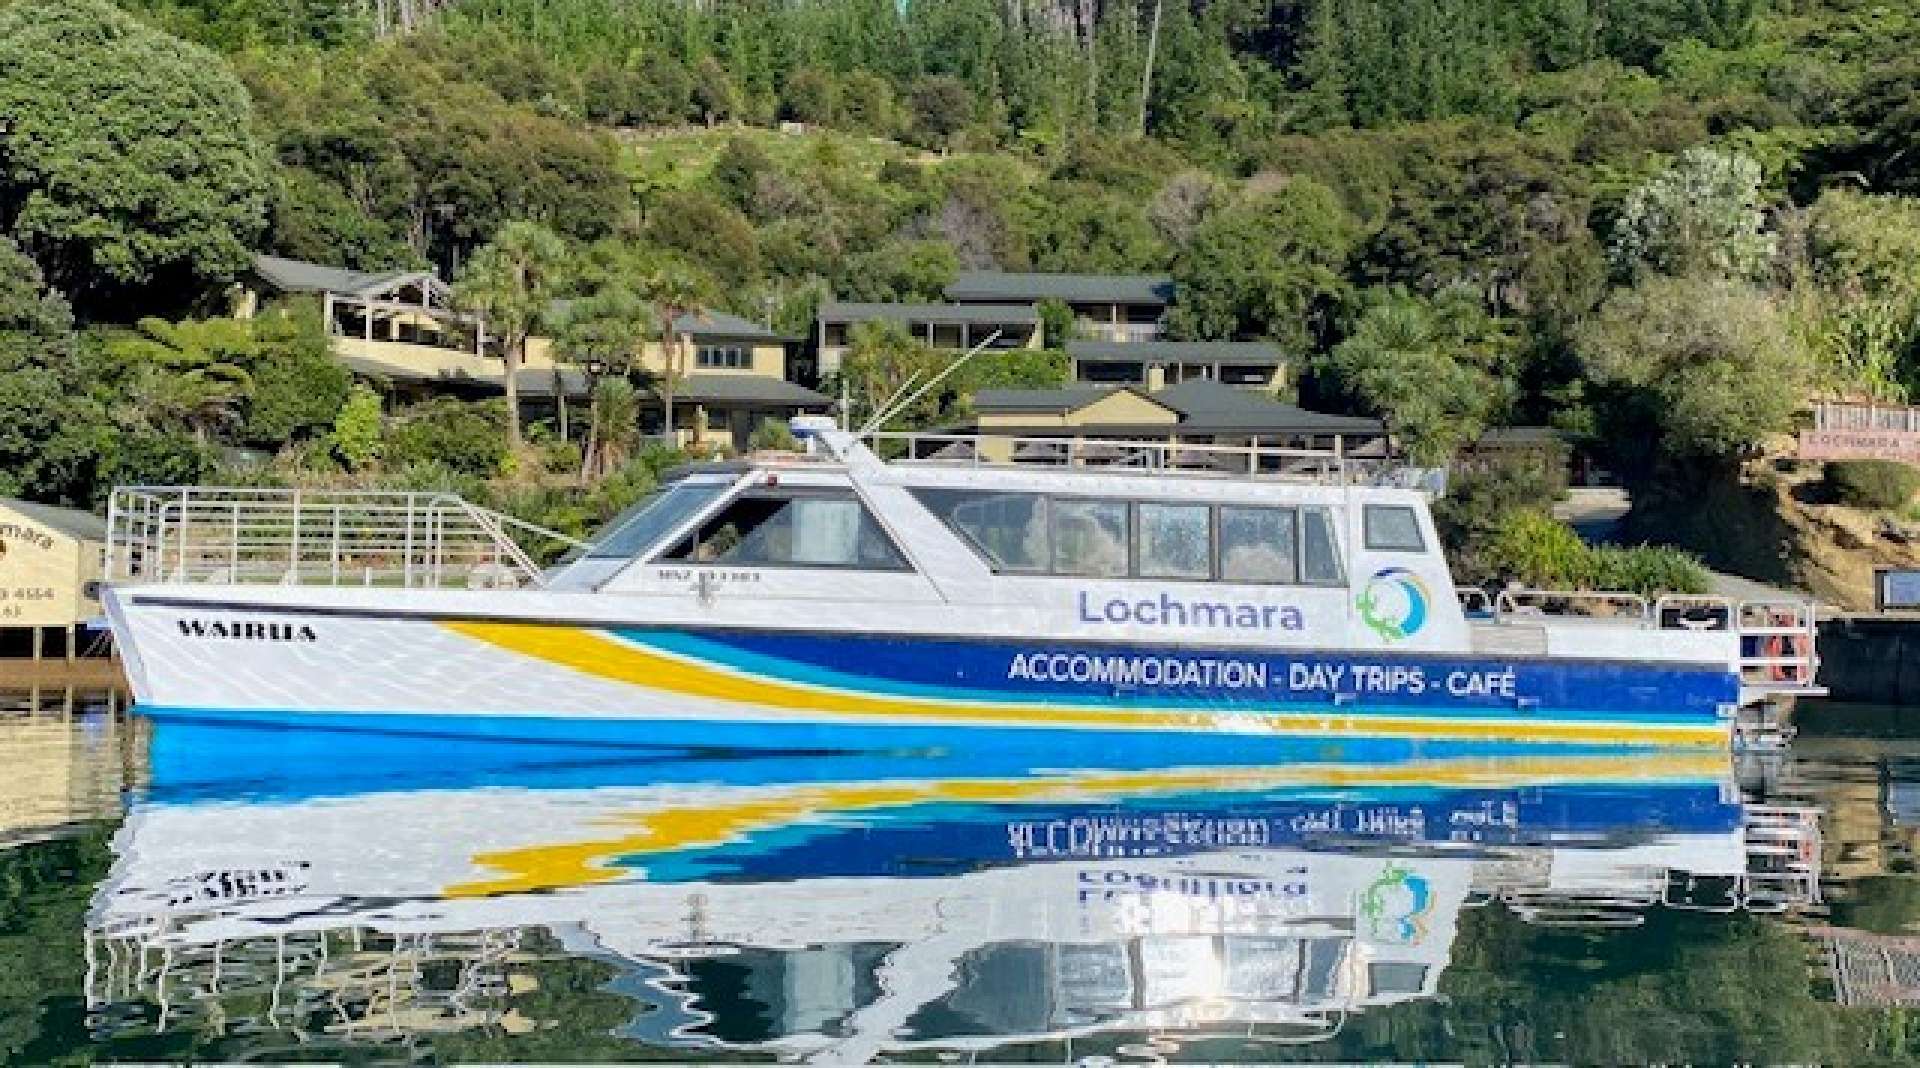 Wairua - Lochmara water taxi